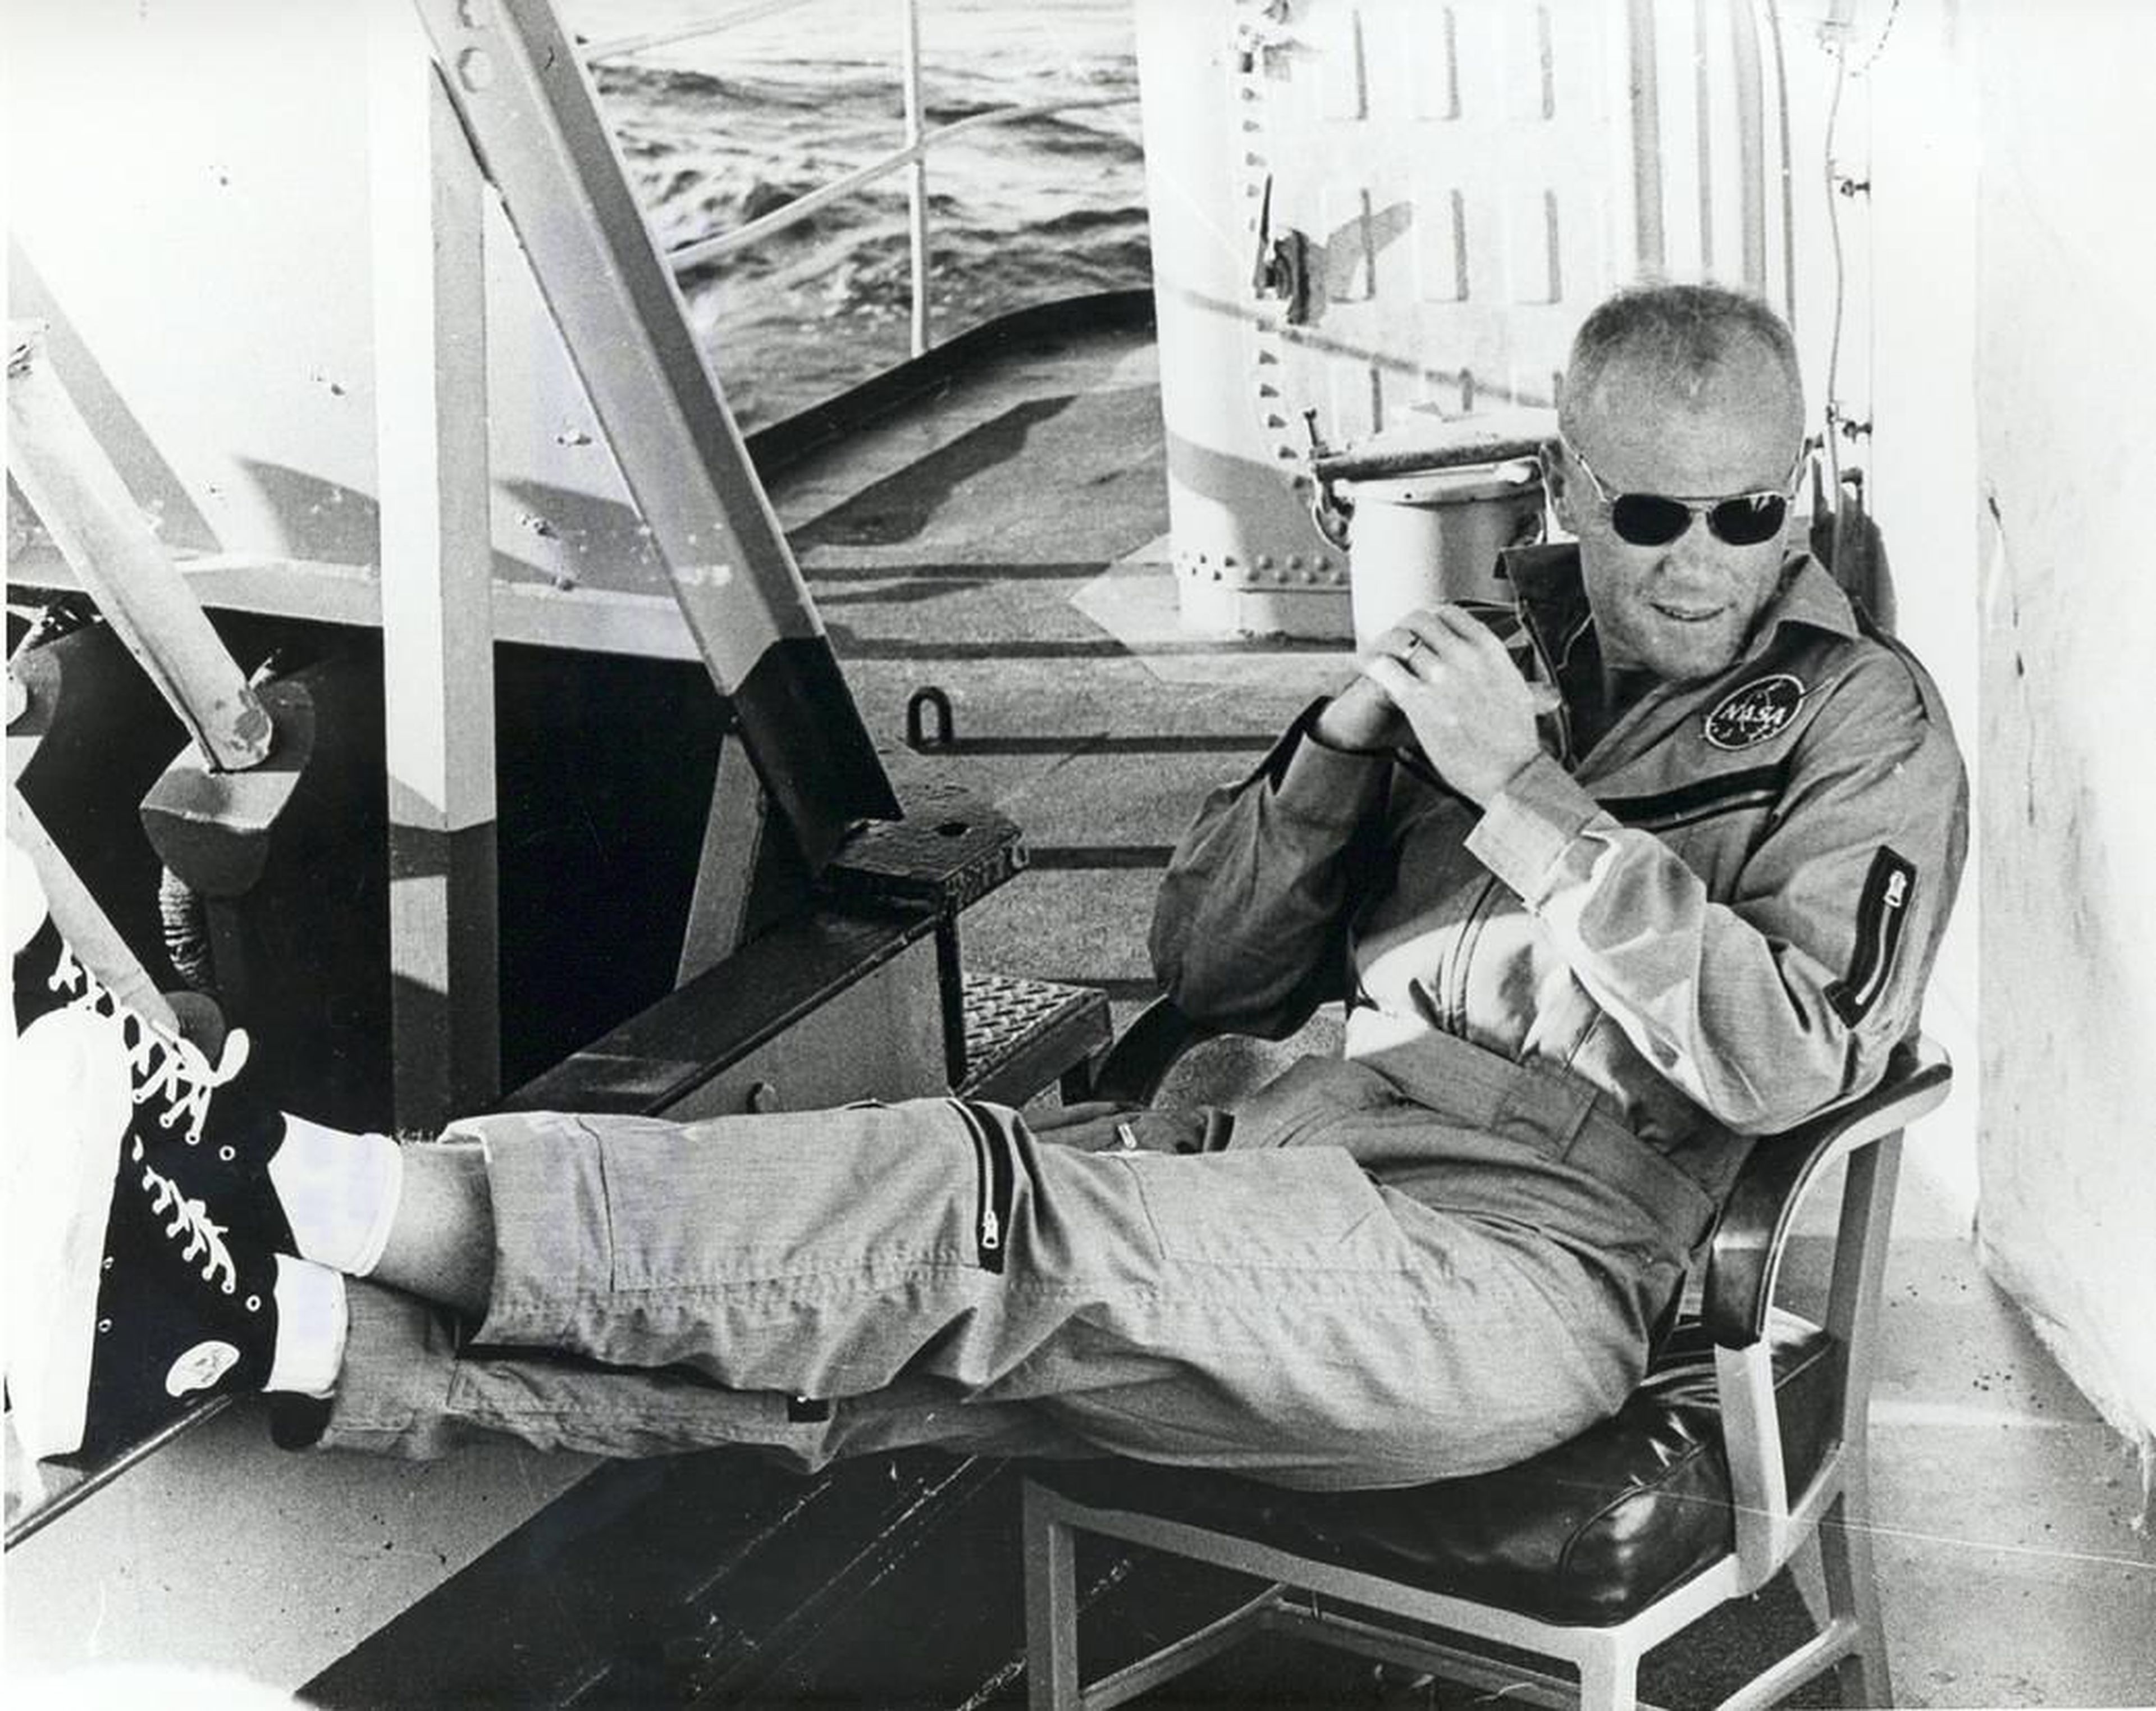 El astronauta y piloto John Glenn descansando después de haberse convertido en el primer estadounidense en orbitar la Tierra.